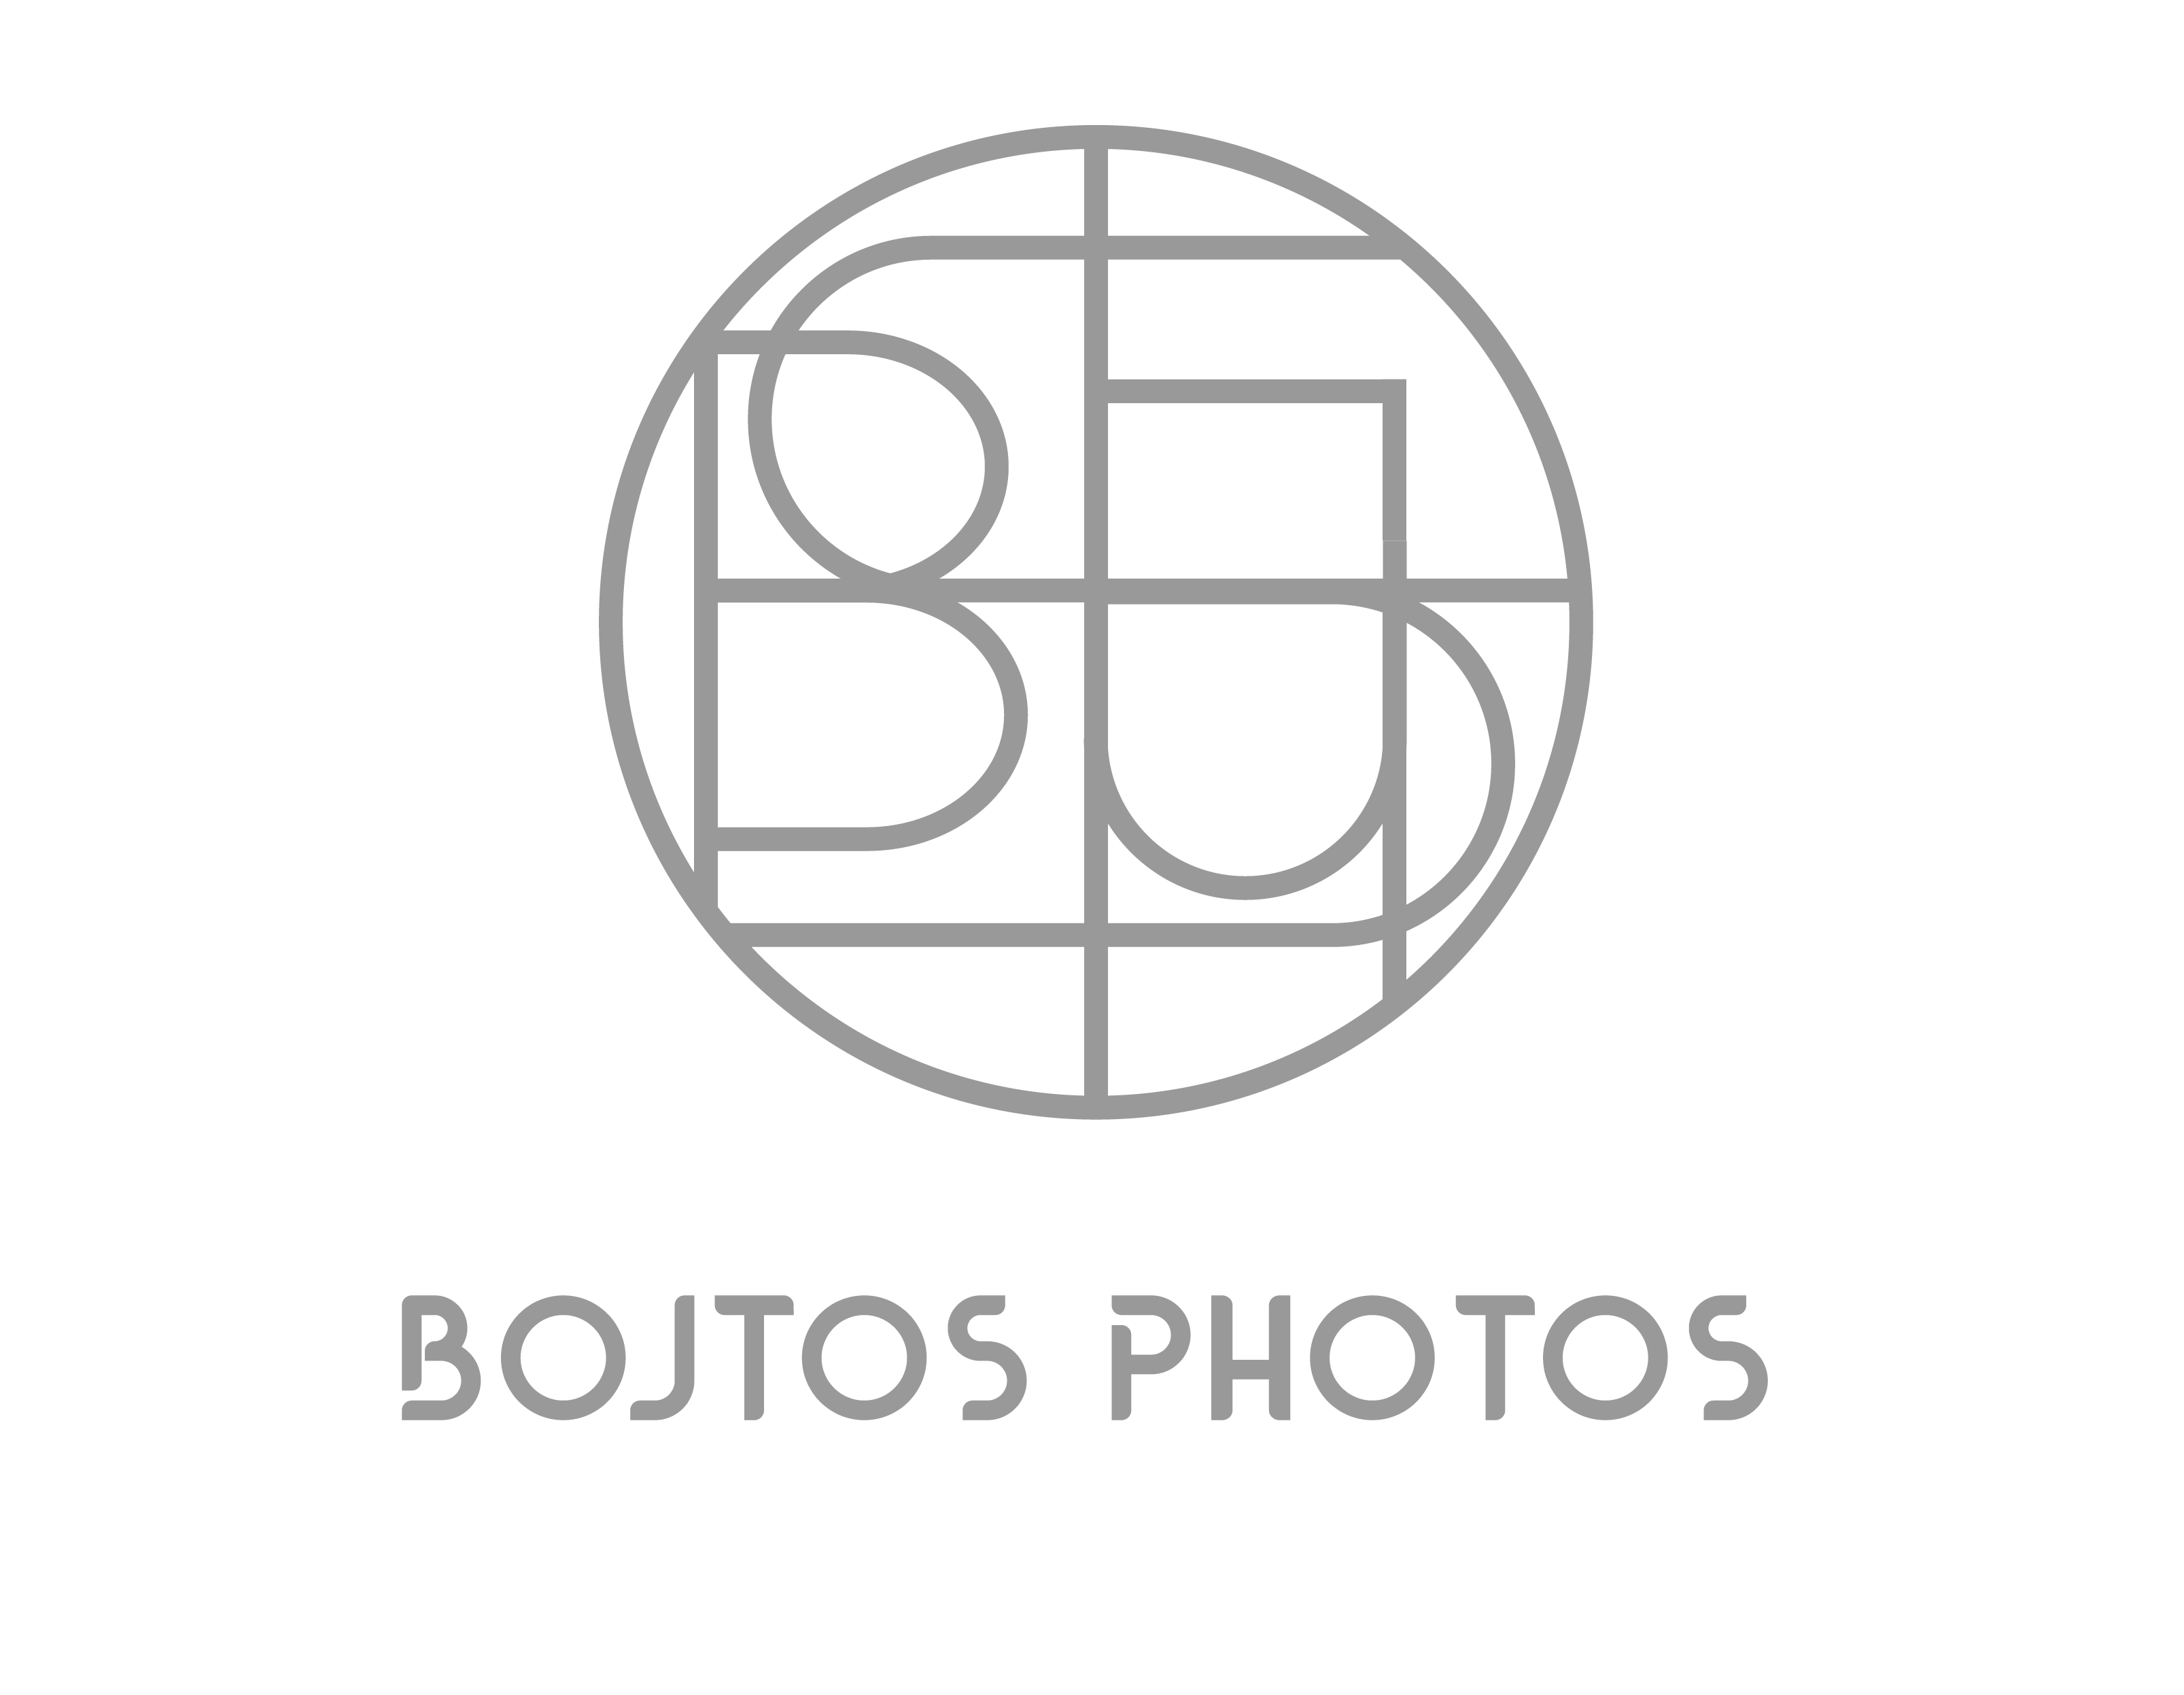 Bojtos Photos